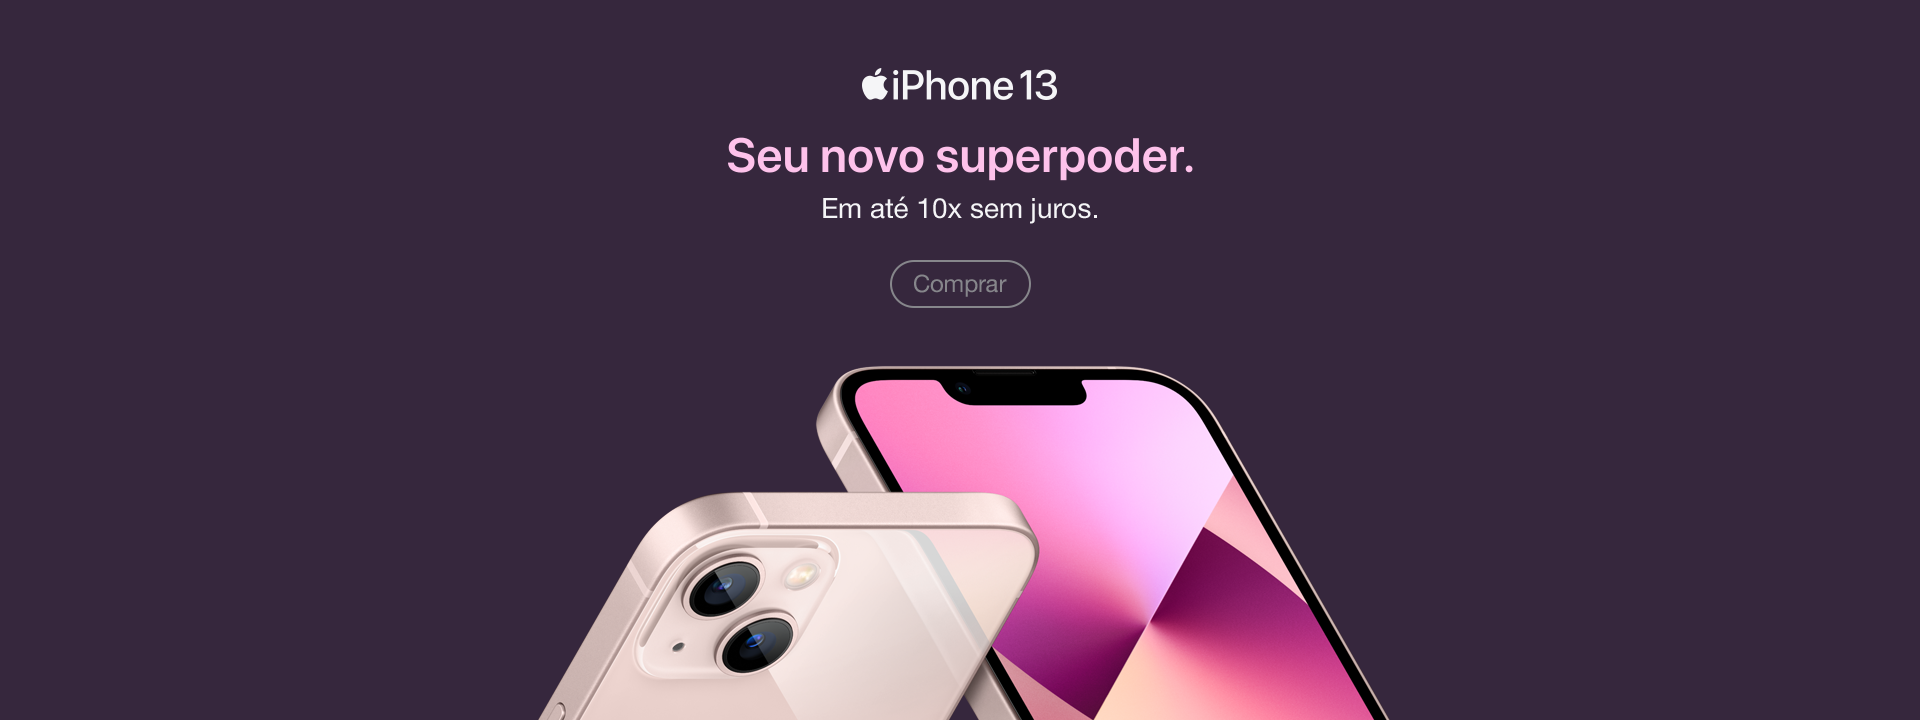 Iphone 13 lançamento